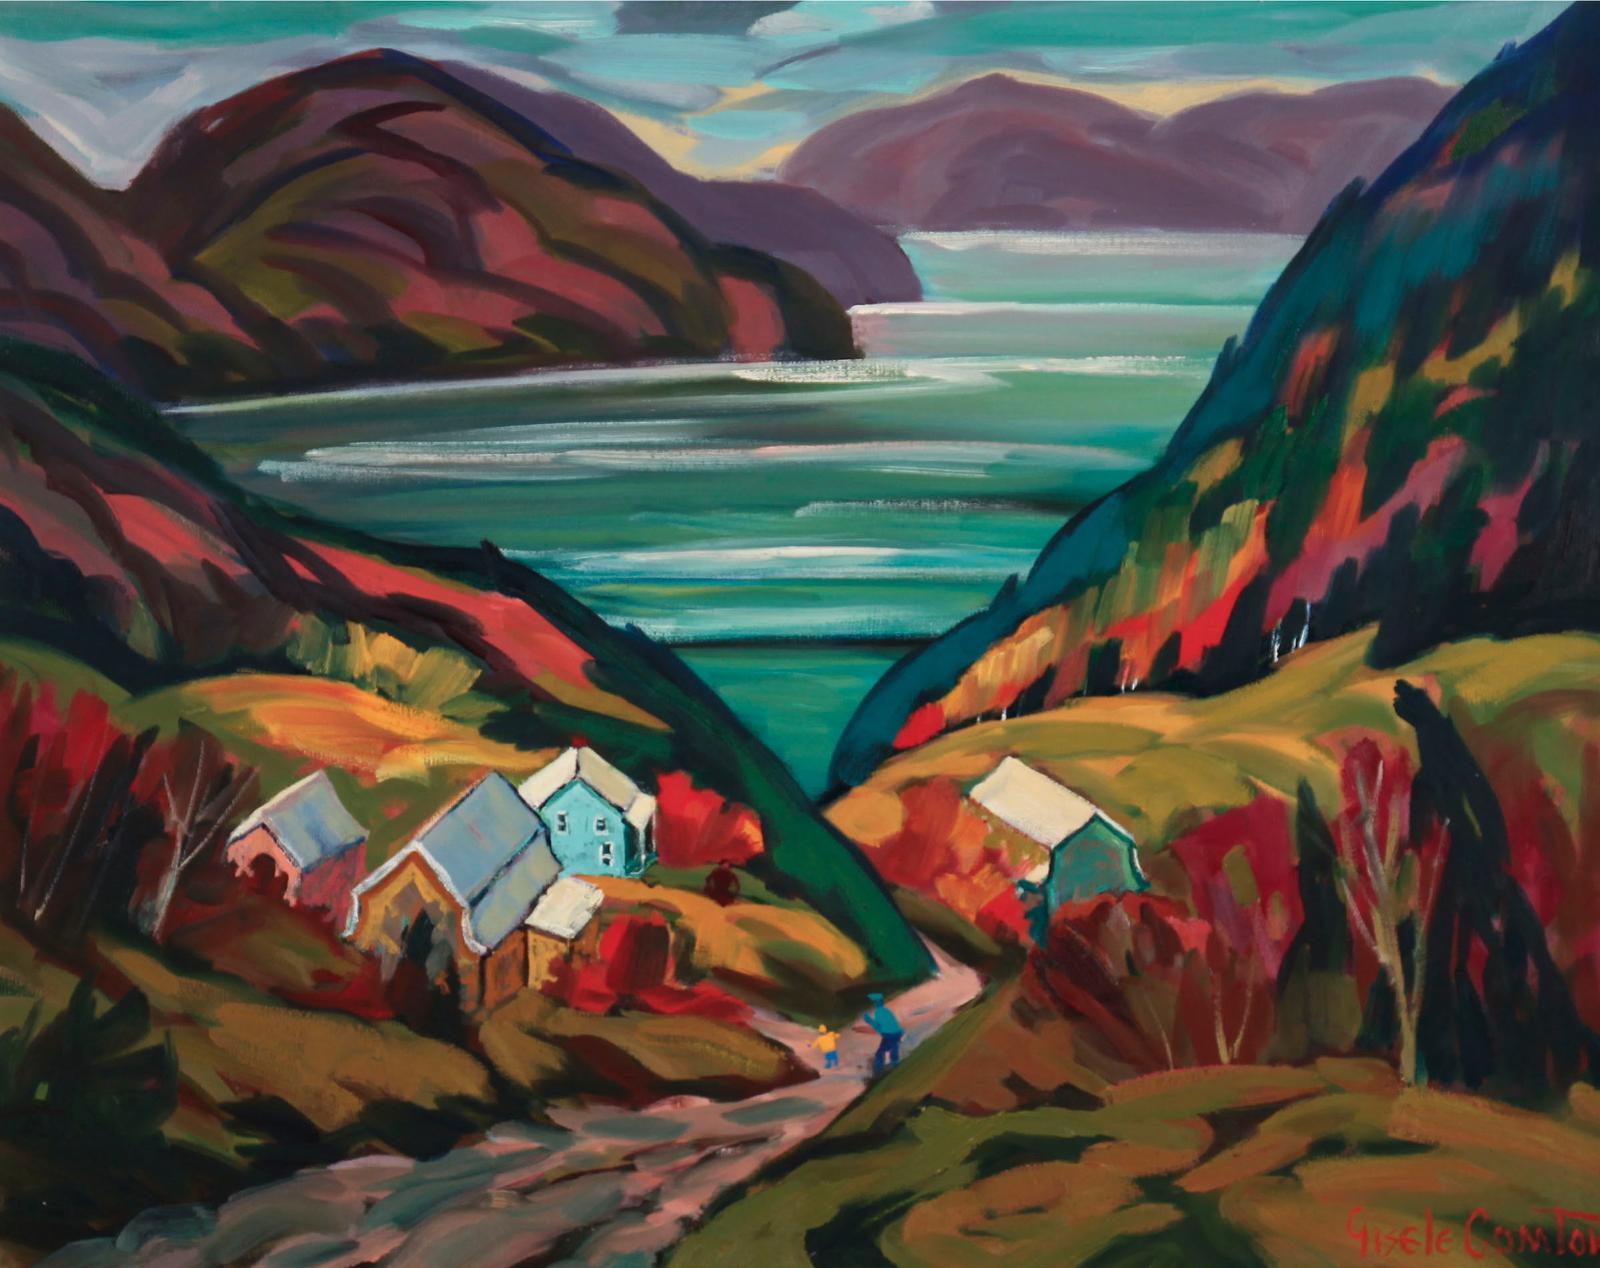 Gisele Comtois (1959) - Cote Ste-Rose, Saguenay, Que